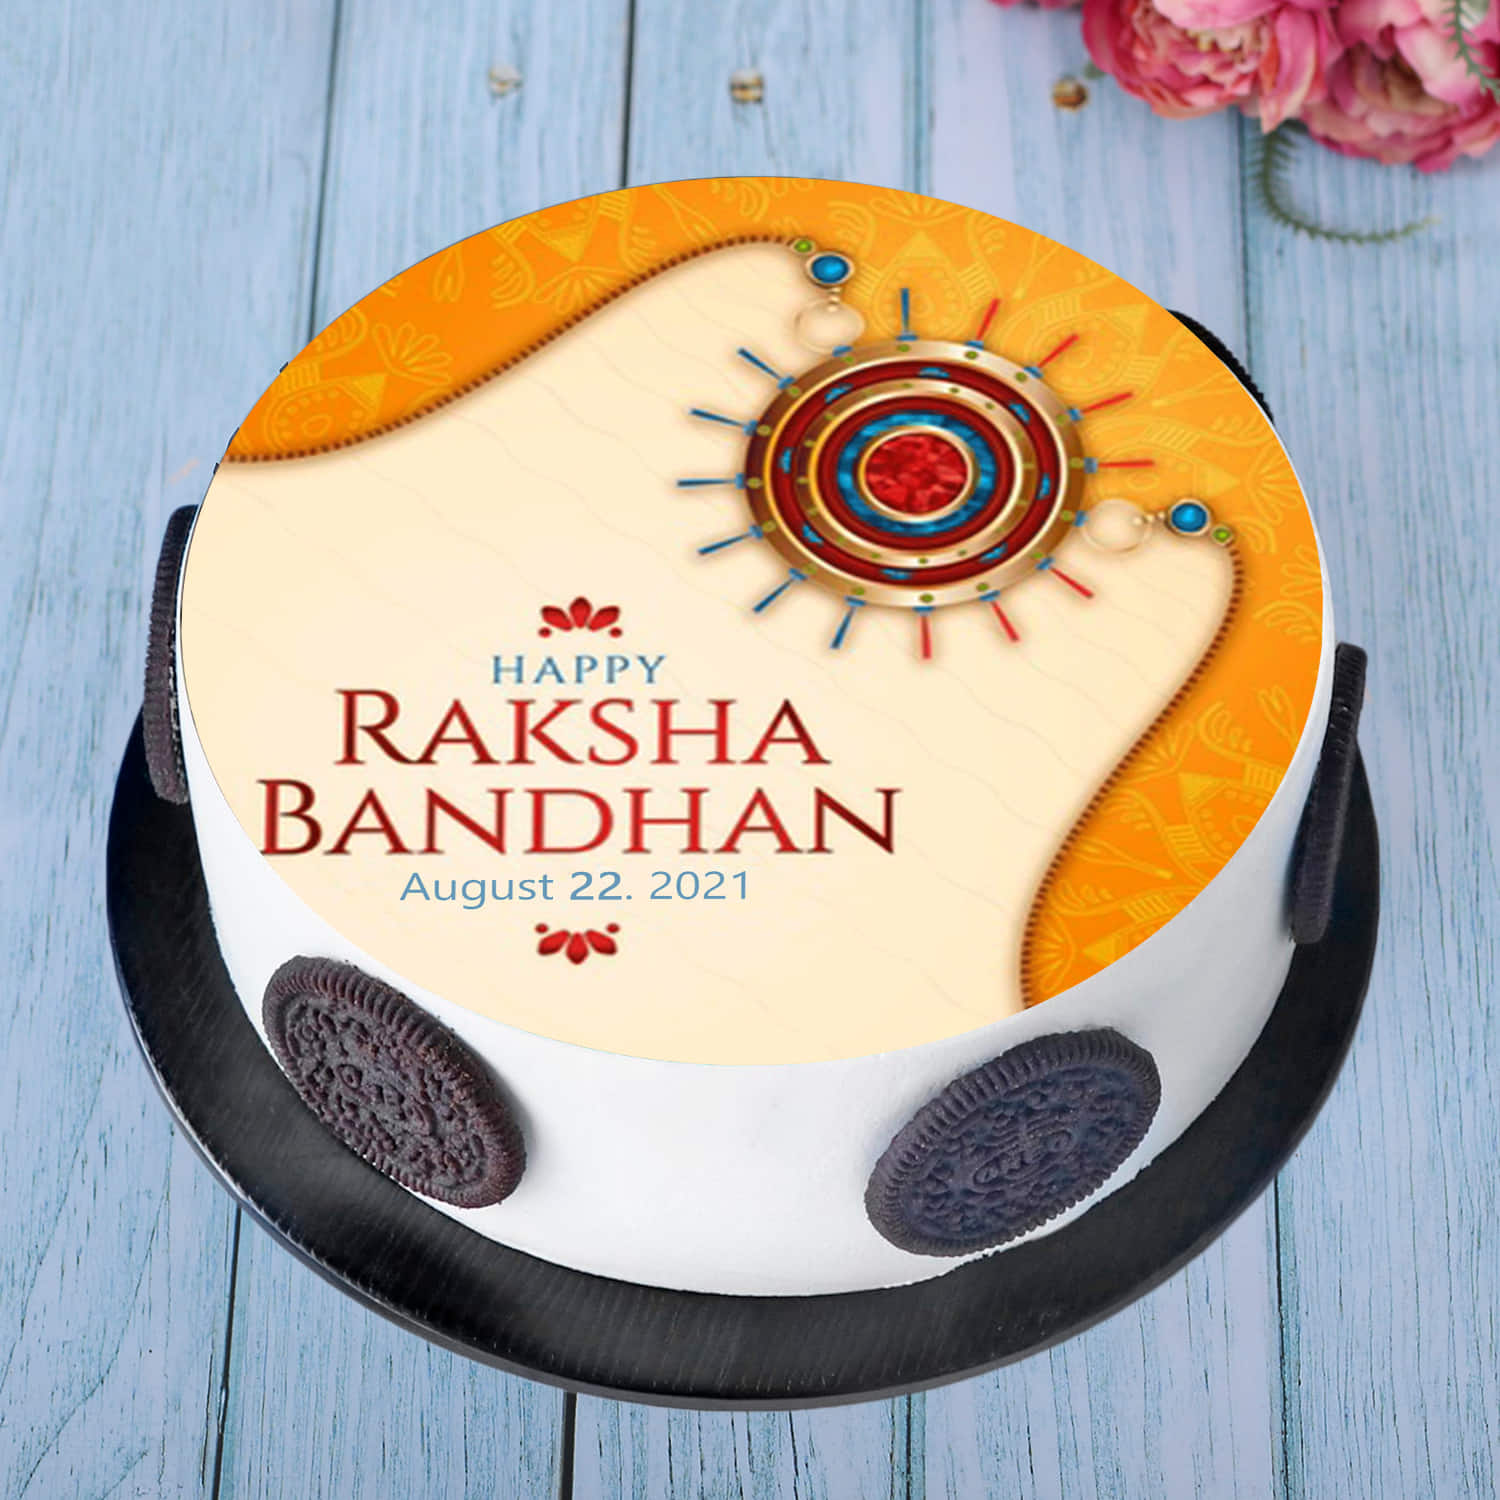 Shop for Fresh Happy Rakshabandhan Fondant Cake online - Tiruchchirappalli